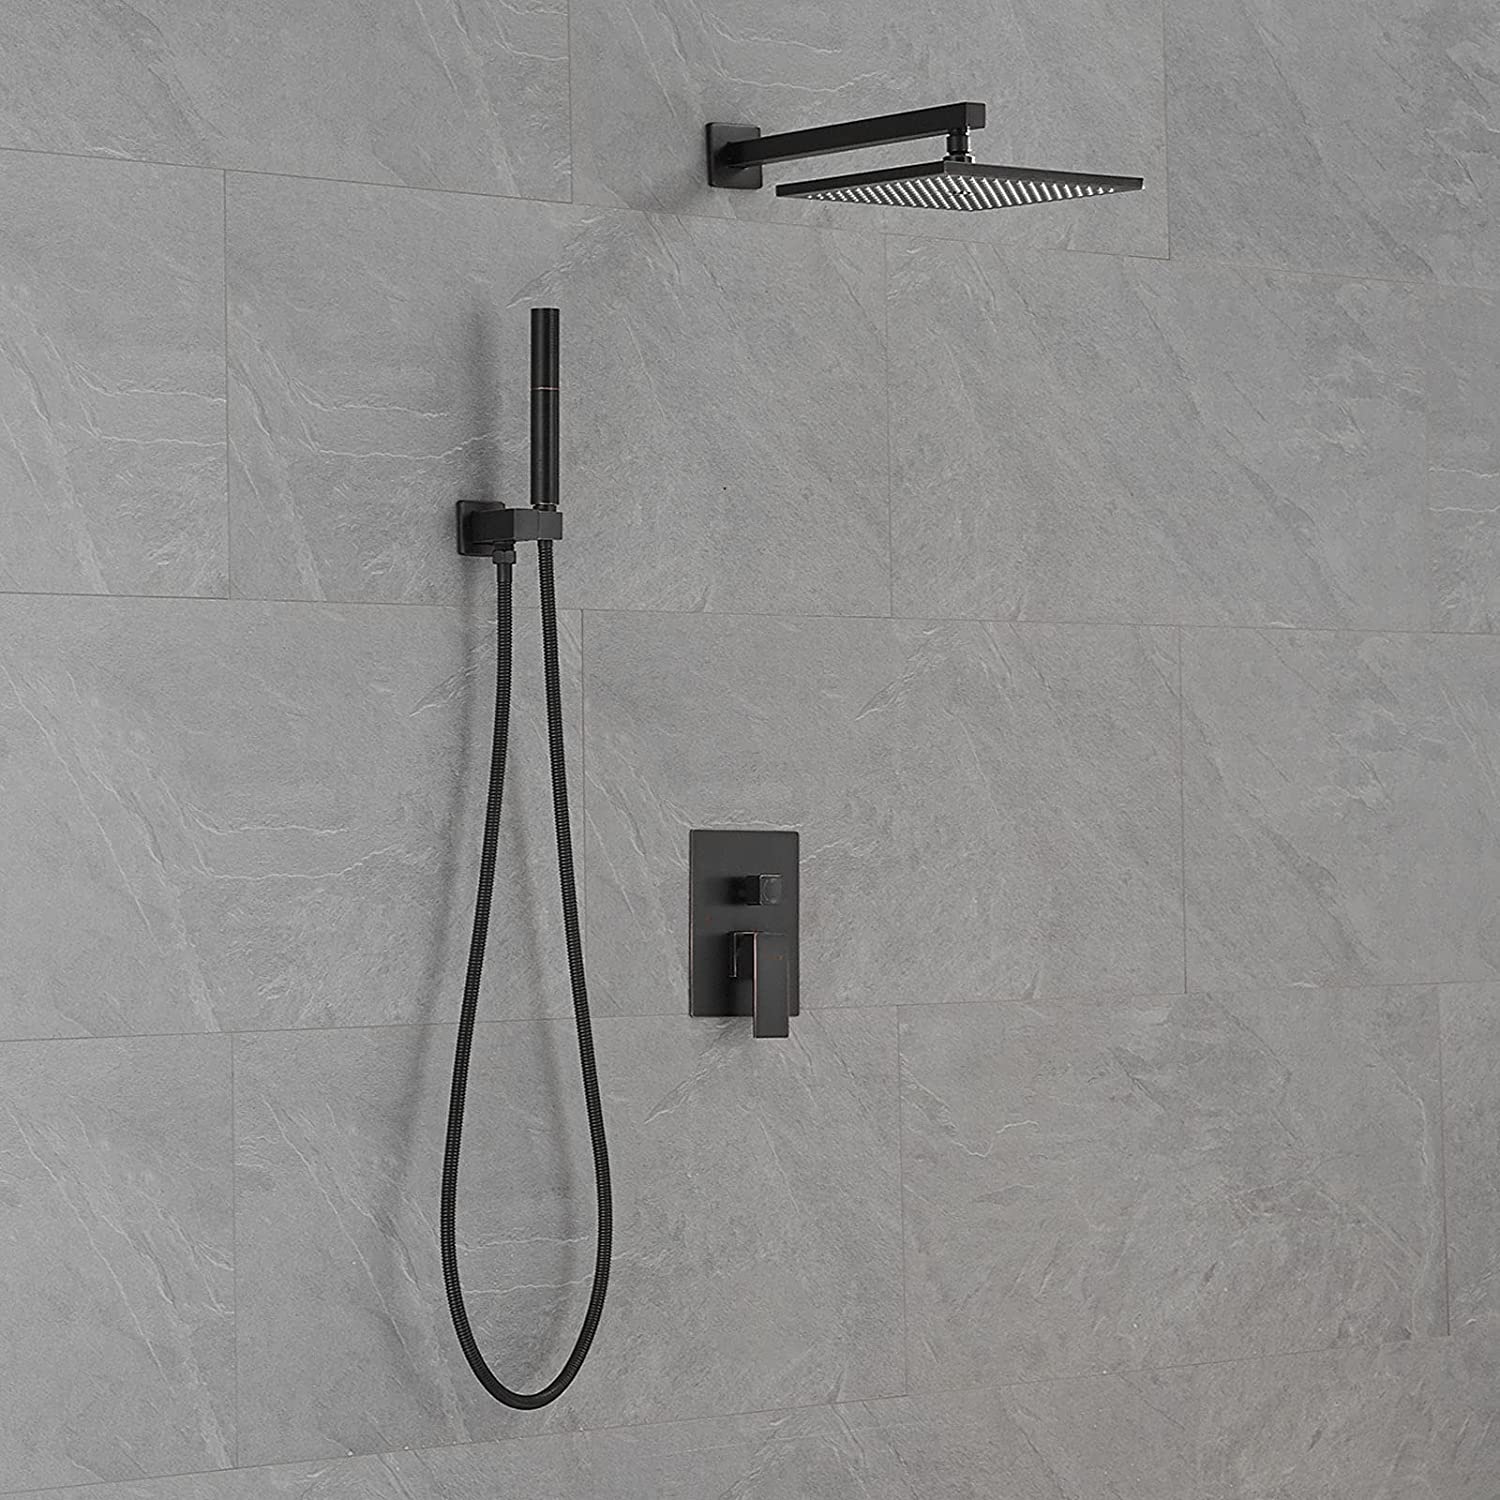 Shower Faucet Fixture Set with 2 in 1 Handheld Shower Bronze - buyfaucet.com